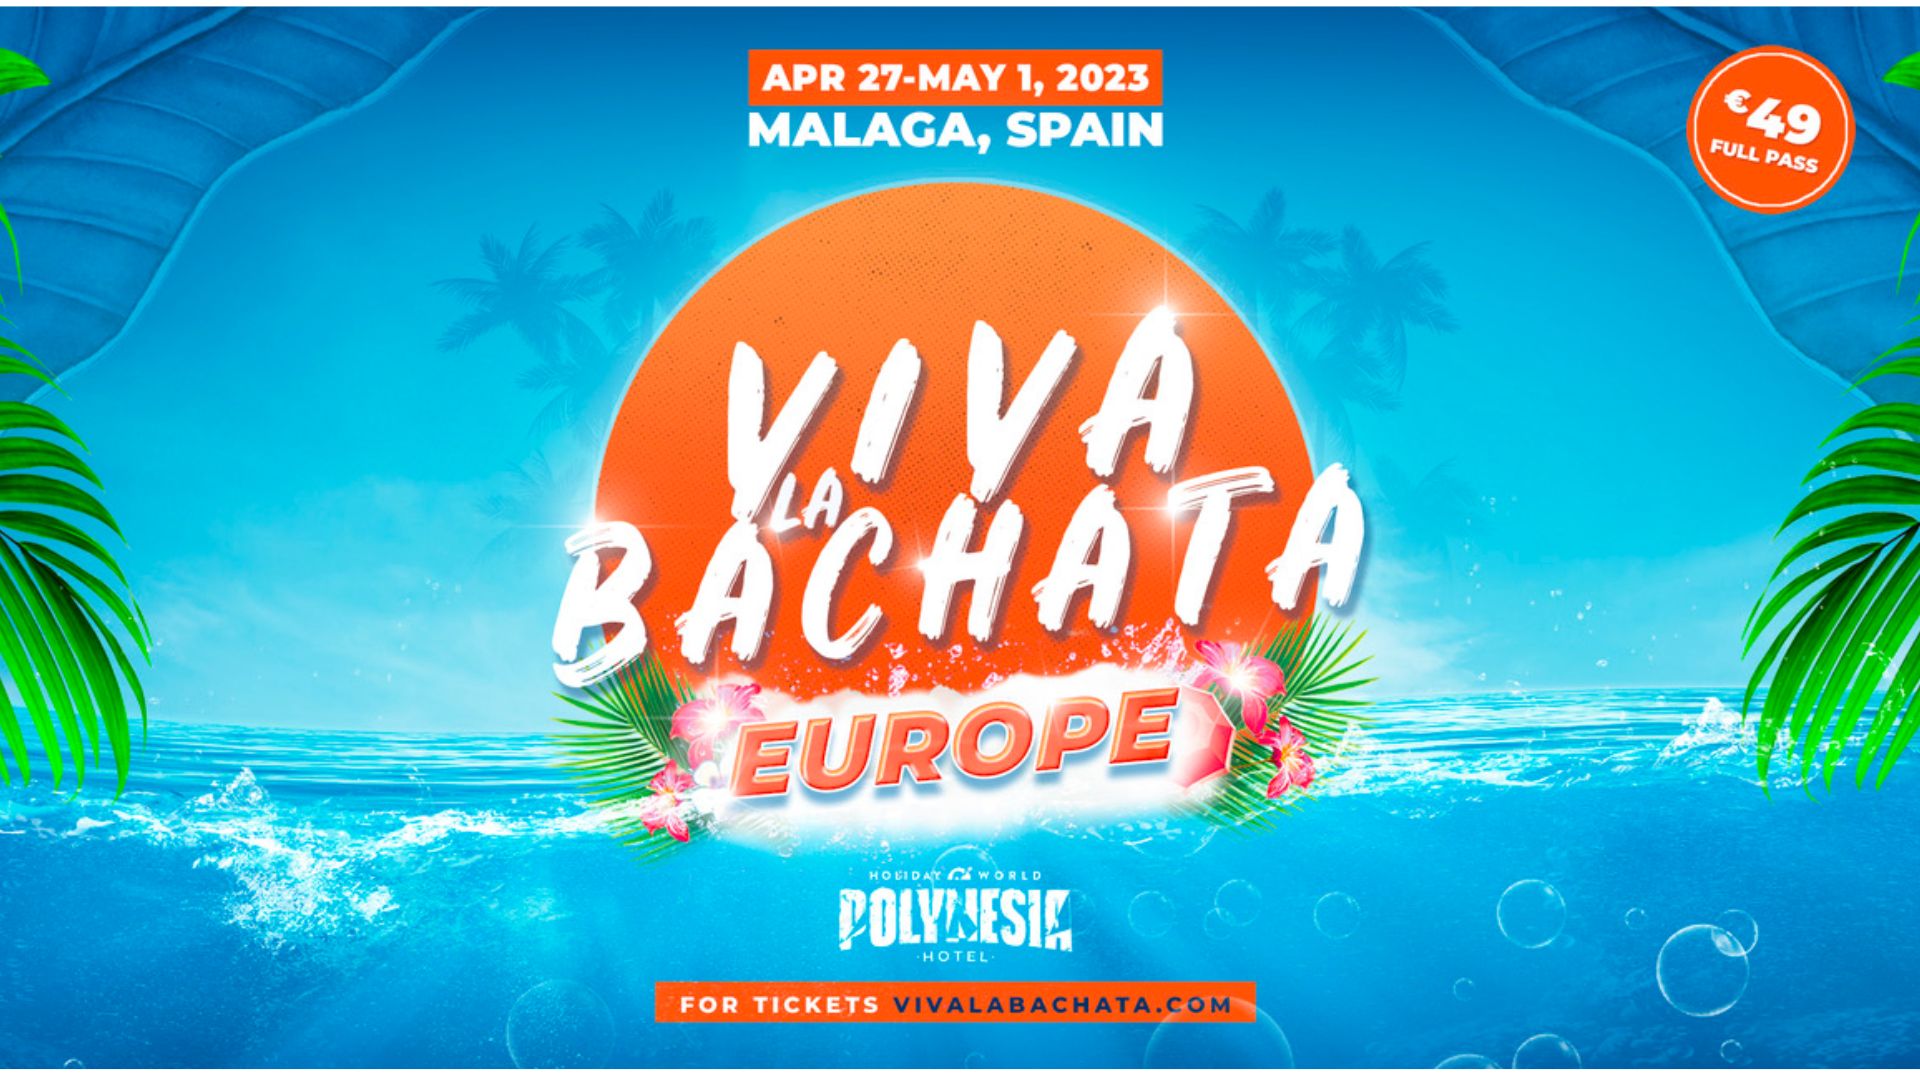 Buy tickets for Viva La Bachata